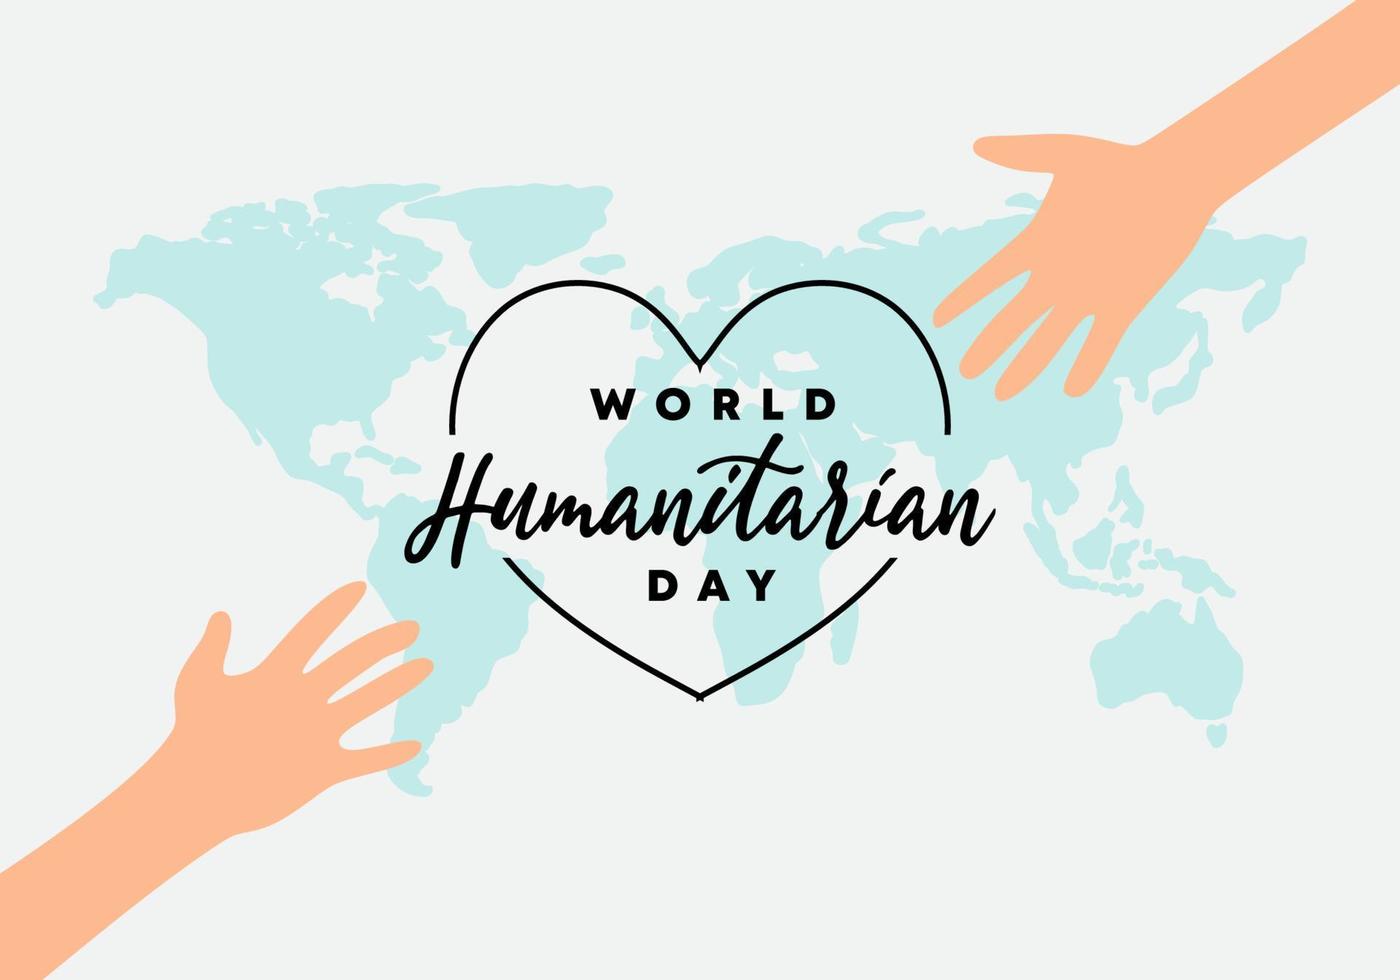 dia mundial humanitário com texto manuscrito e mão no mapa do mundo vetor